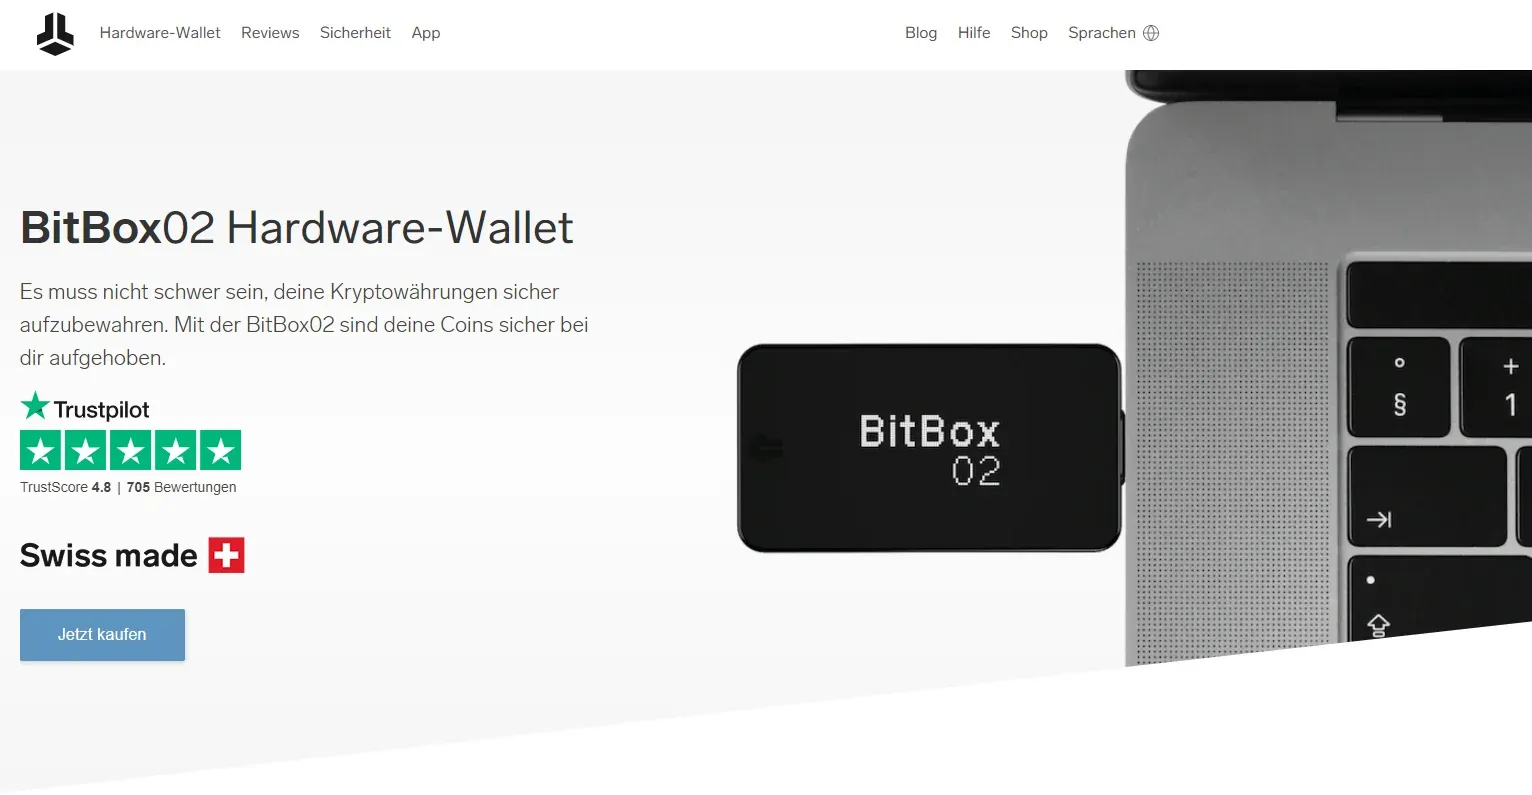 Die Produktseite der Bitbox